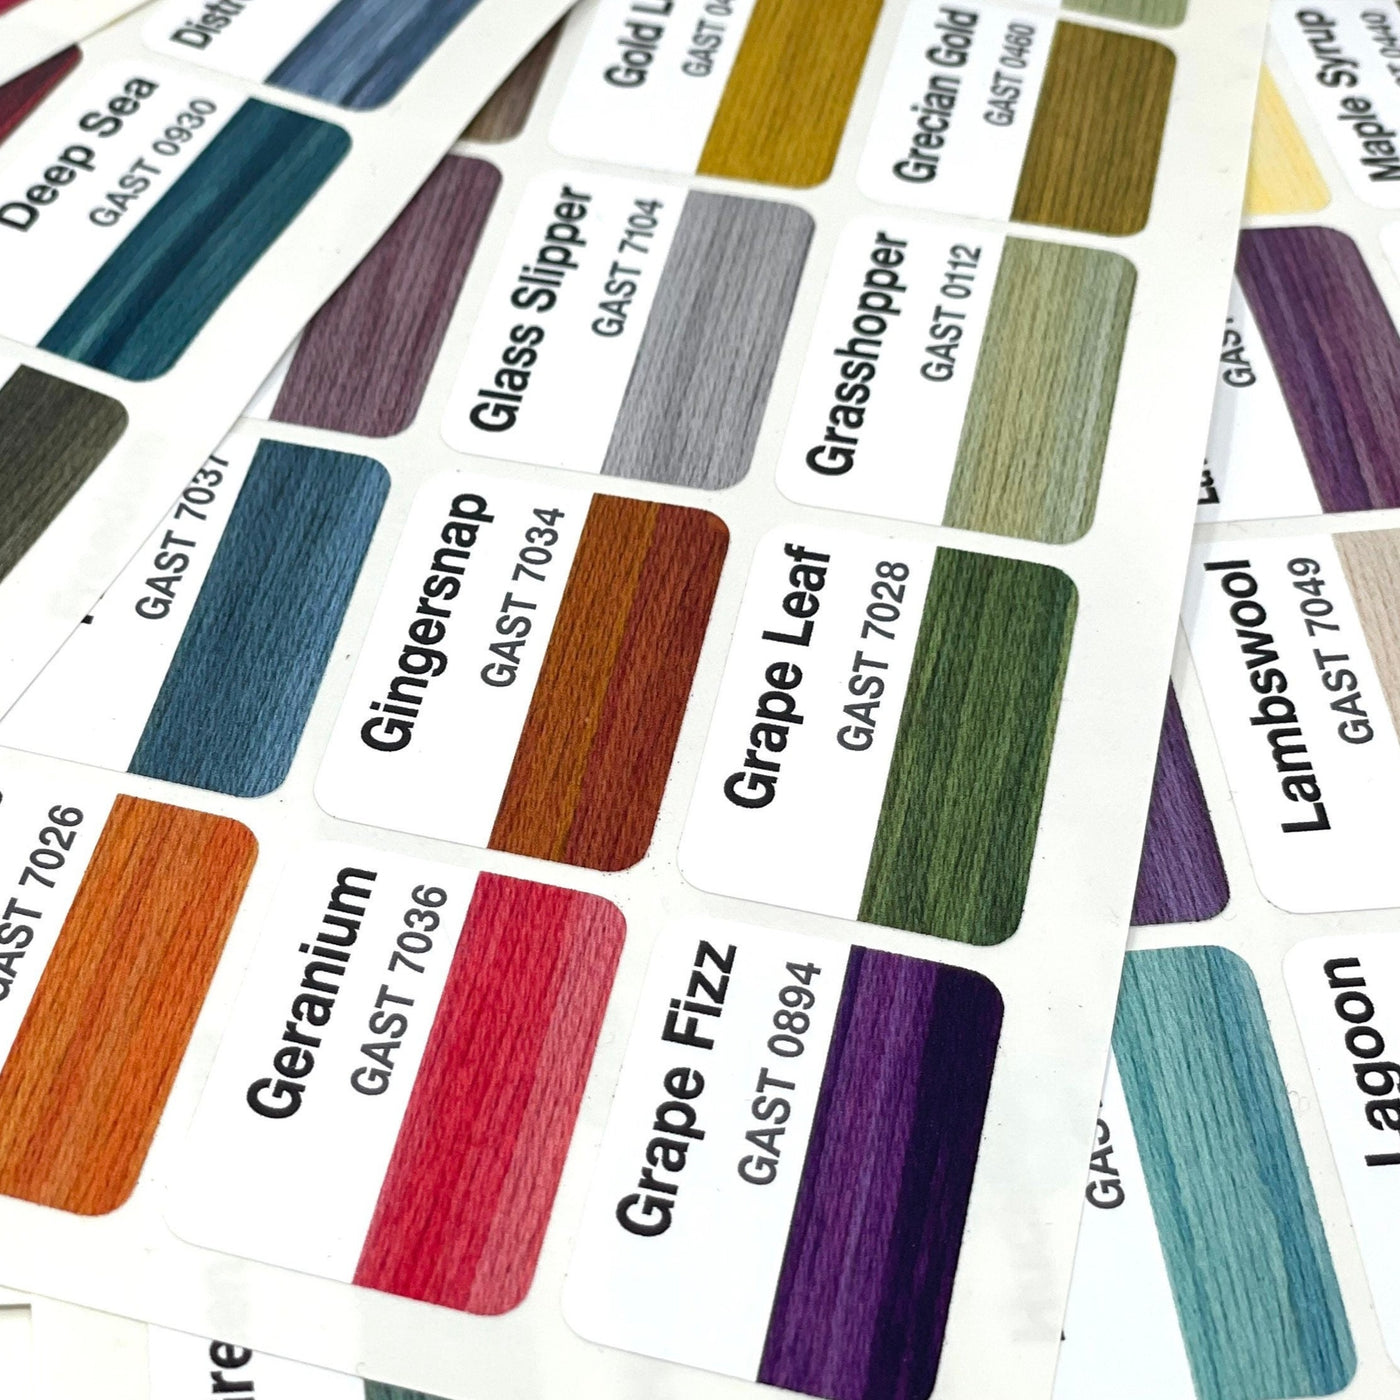 Gentle Arts colour vinyl labels (x227) suitable for Floss a way bags